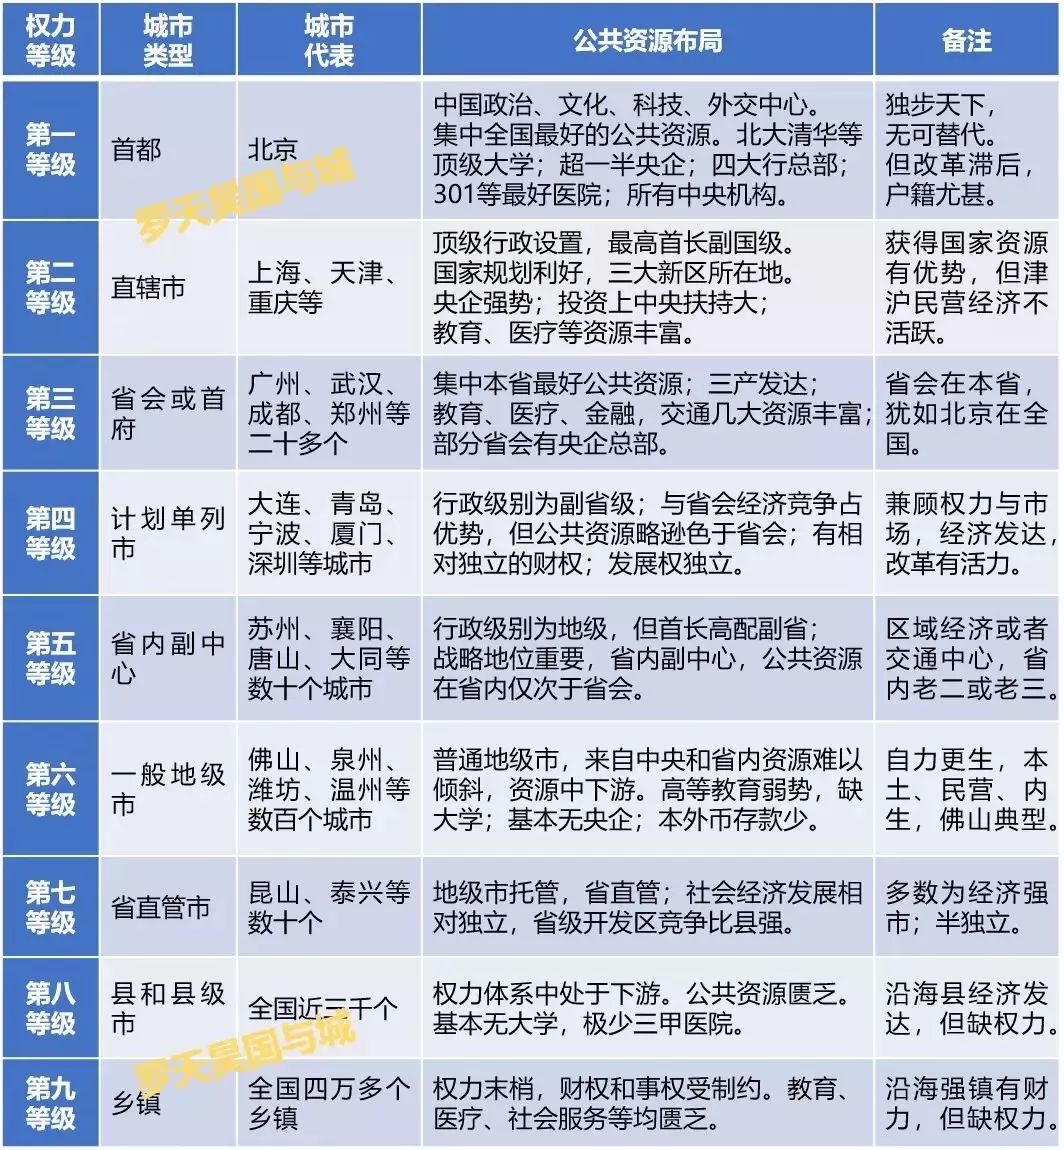 黄冈抗新冠警示:中国急需改变按行政级别分配公共资源